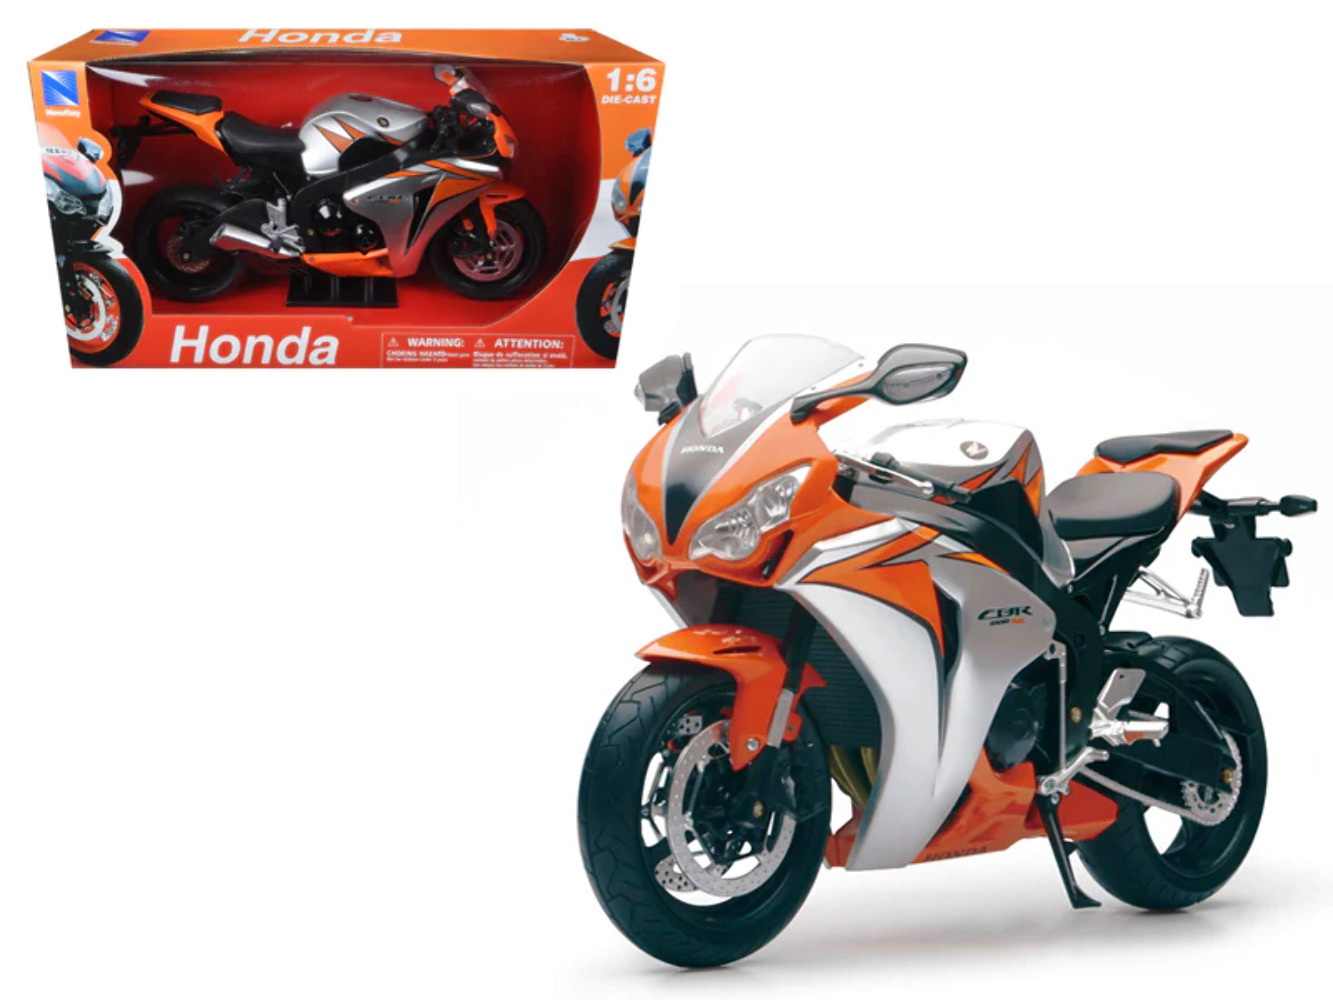 2010 Honda CBR 1000RR Motorcycle 1/6 Diecast Model